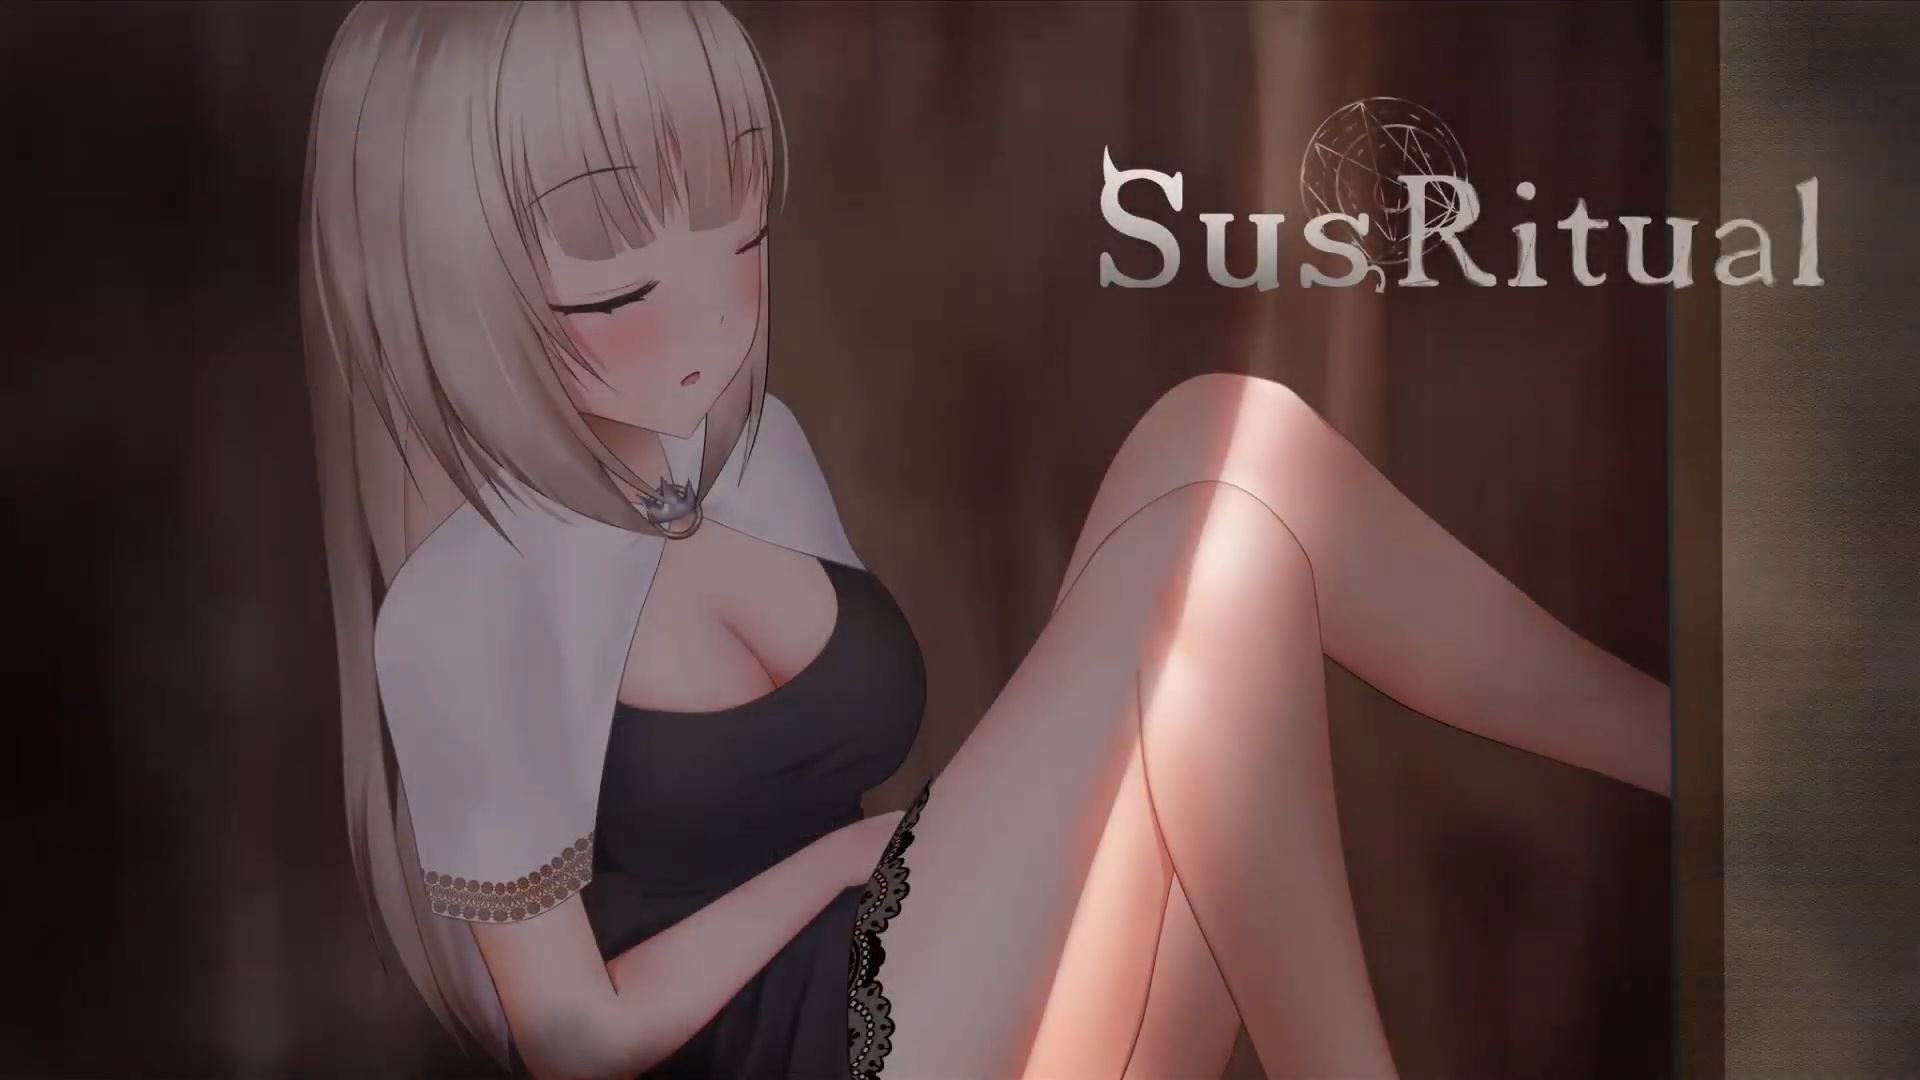 SusRitual porn xxx game download cover